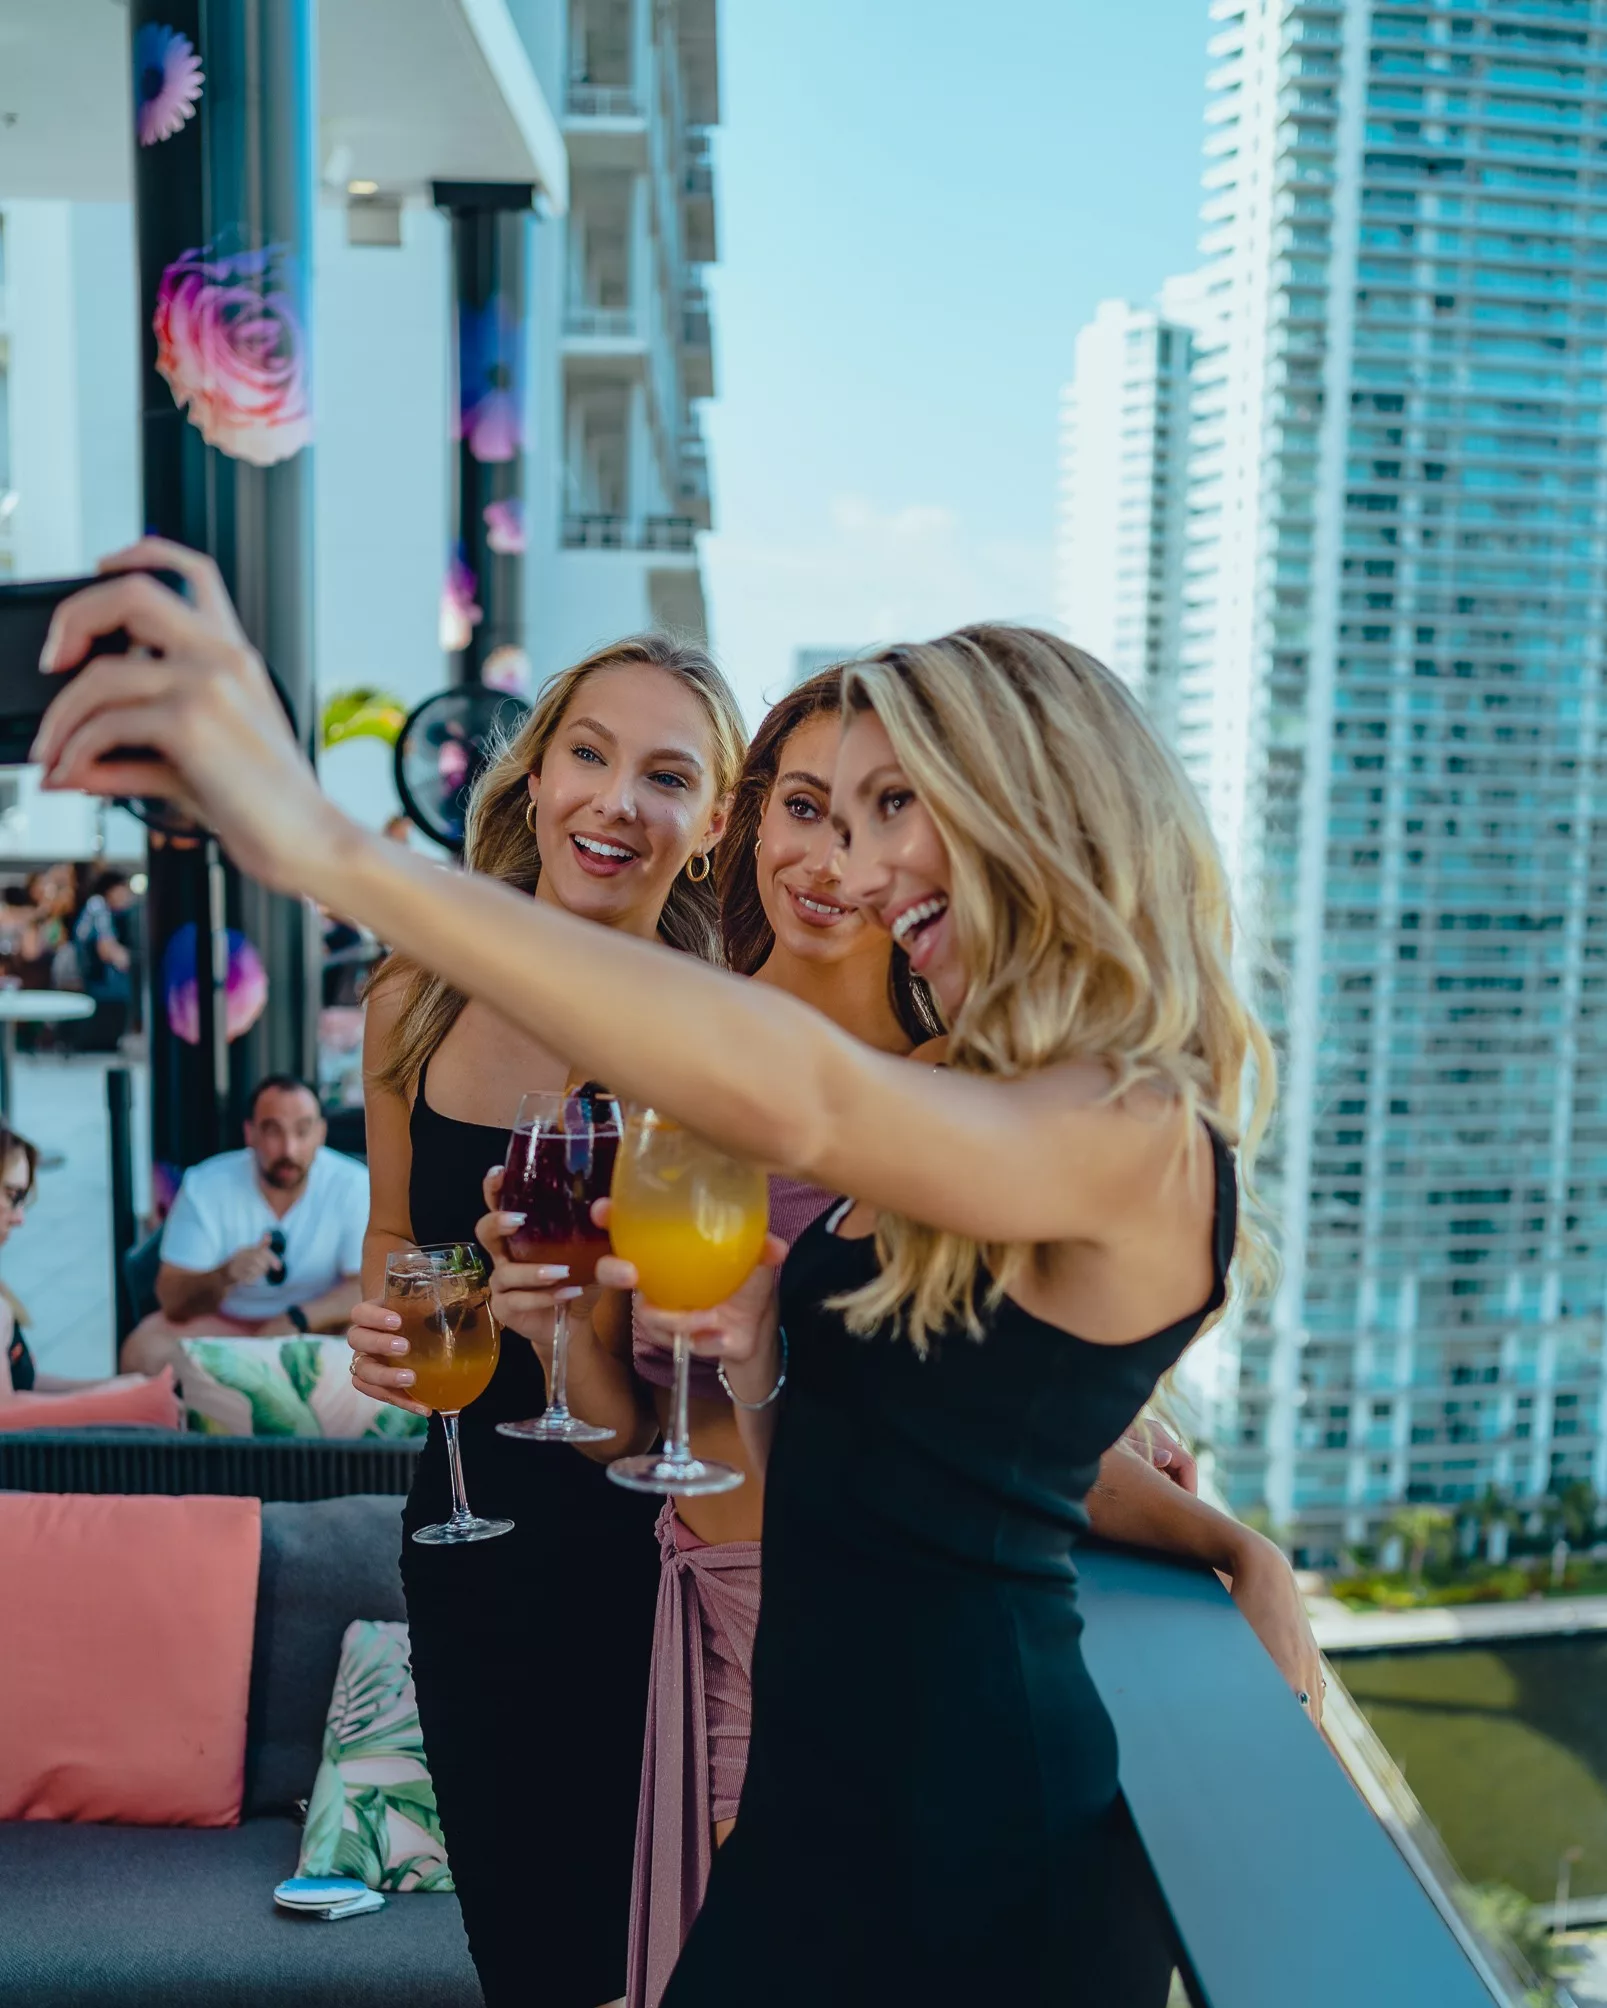 ladies at happy hour taking a selfie